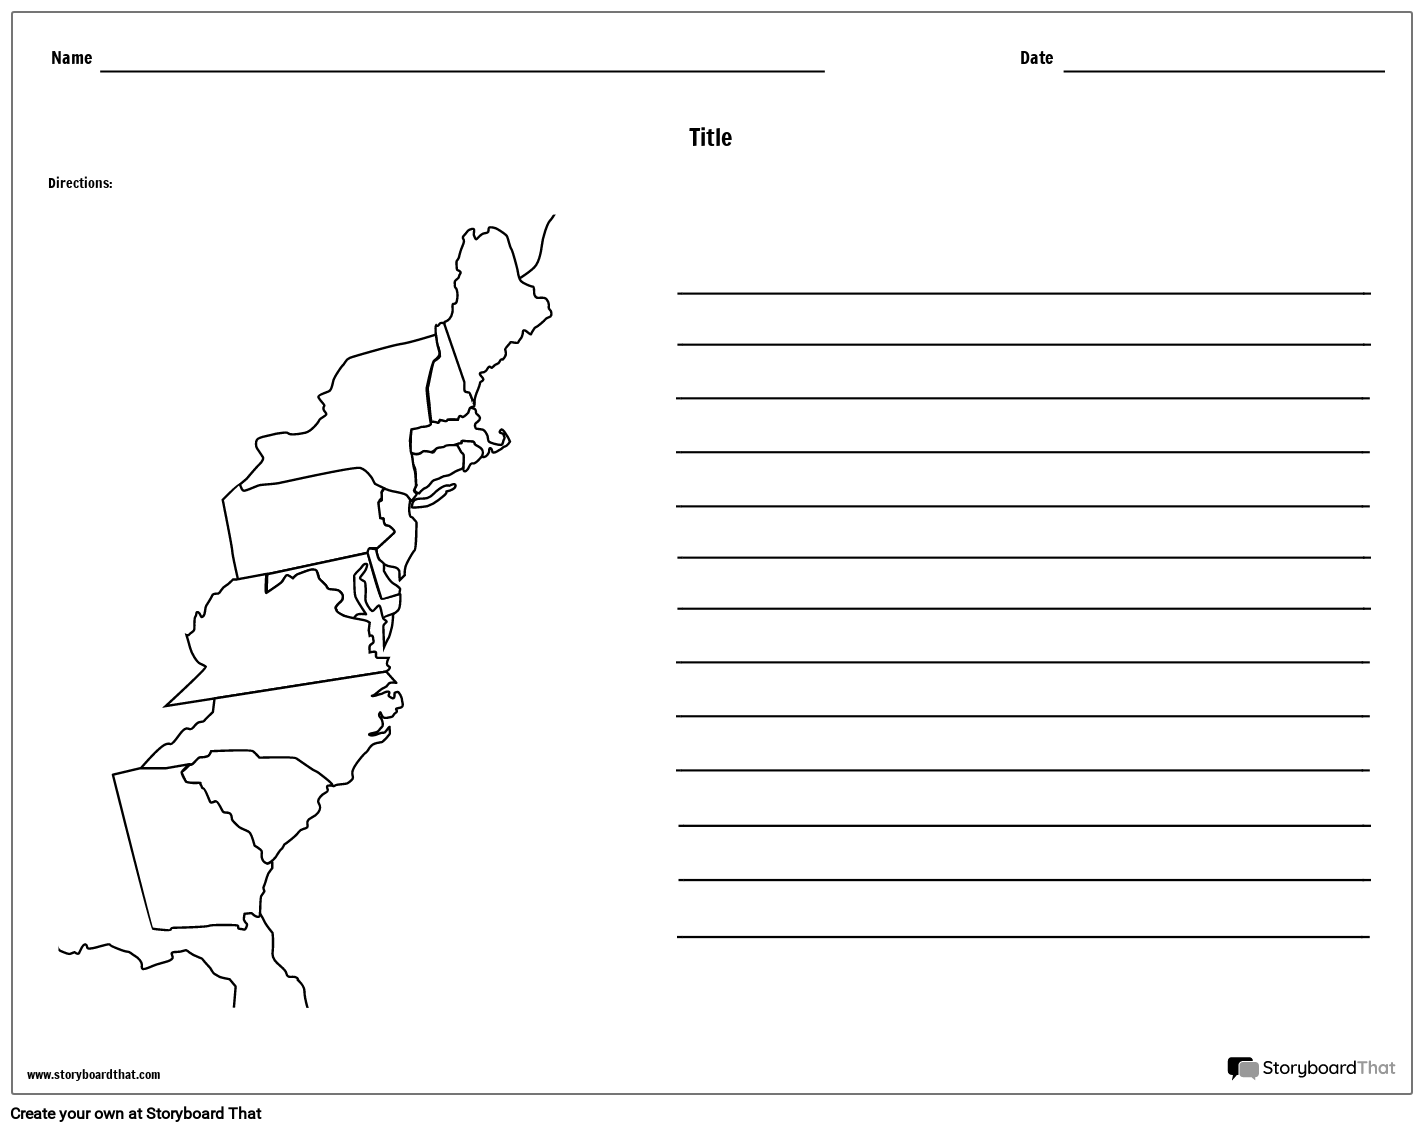 מפת 13 מושבות - עם קווים